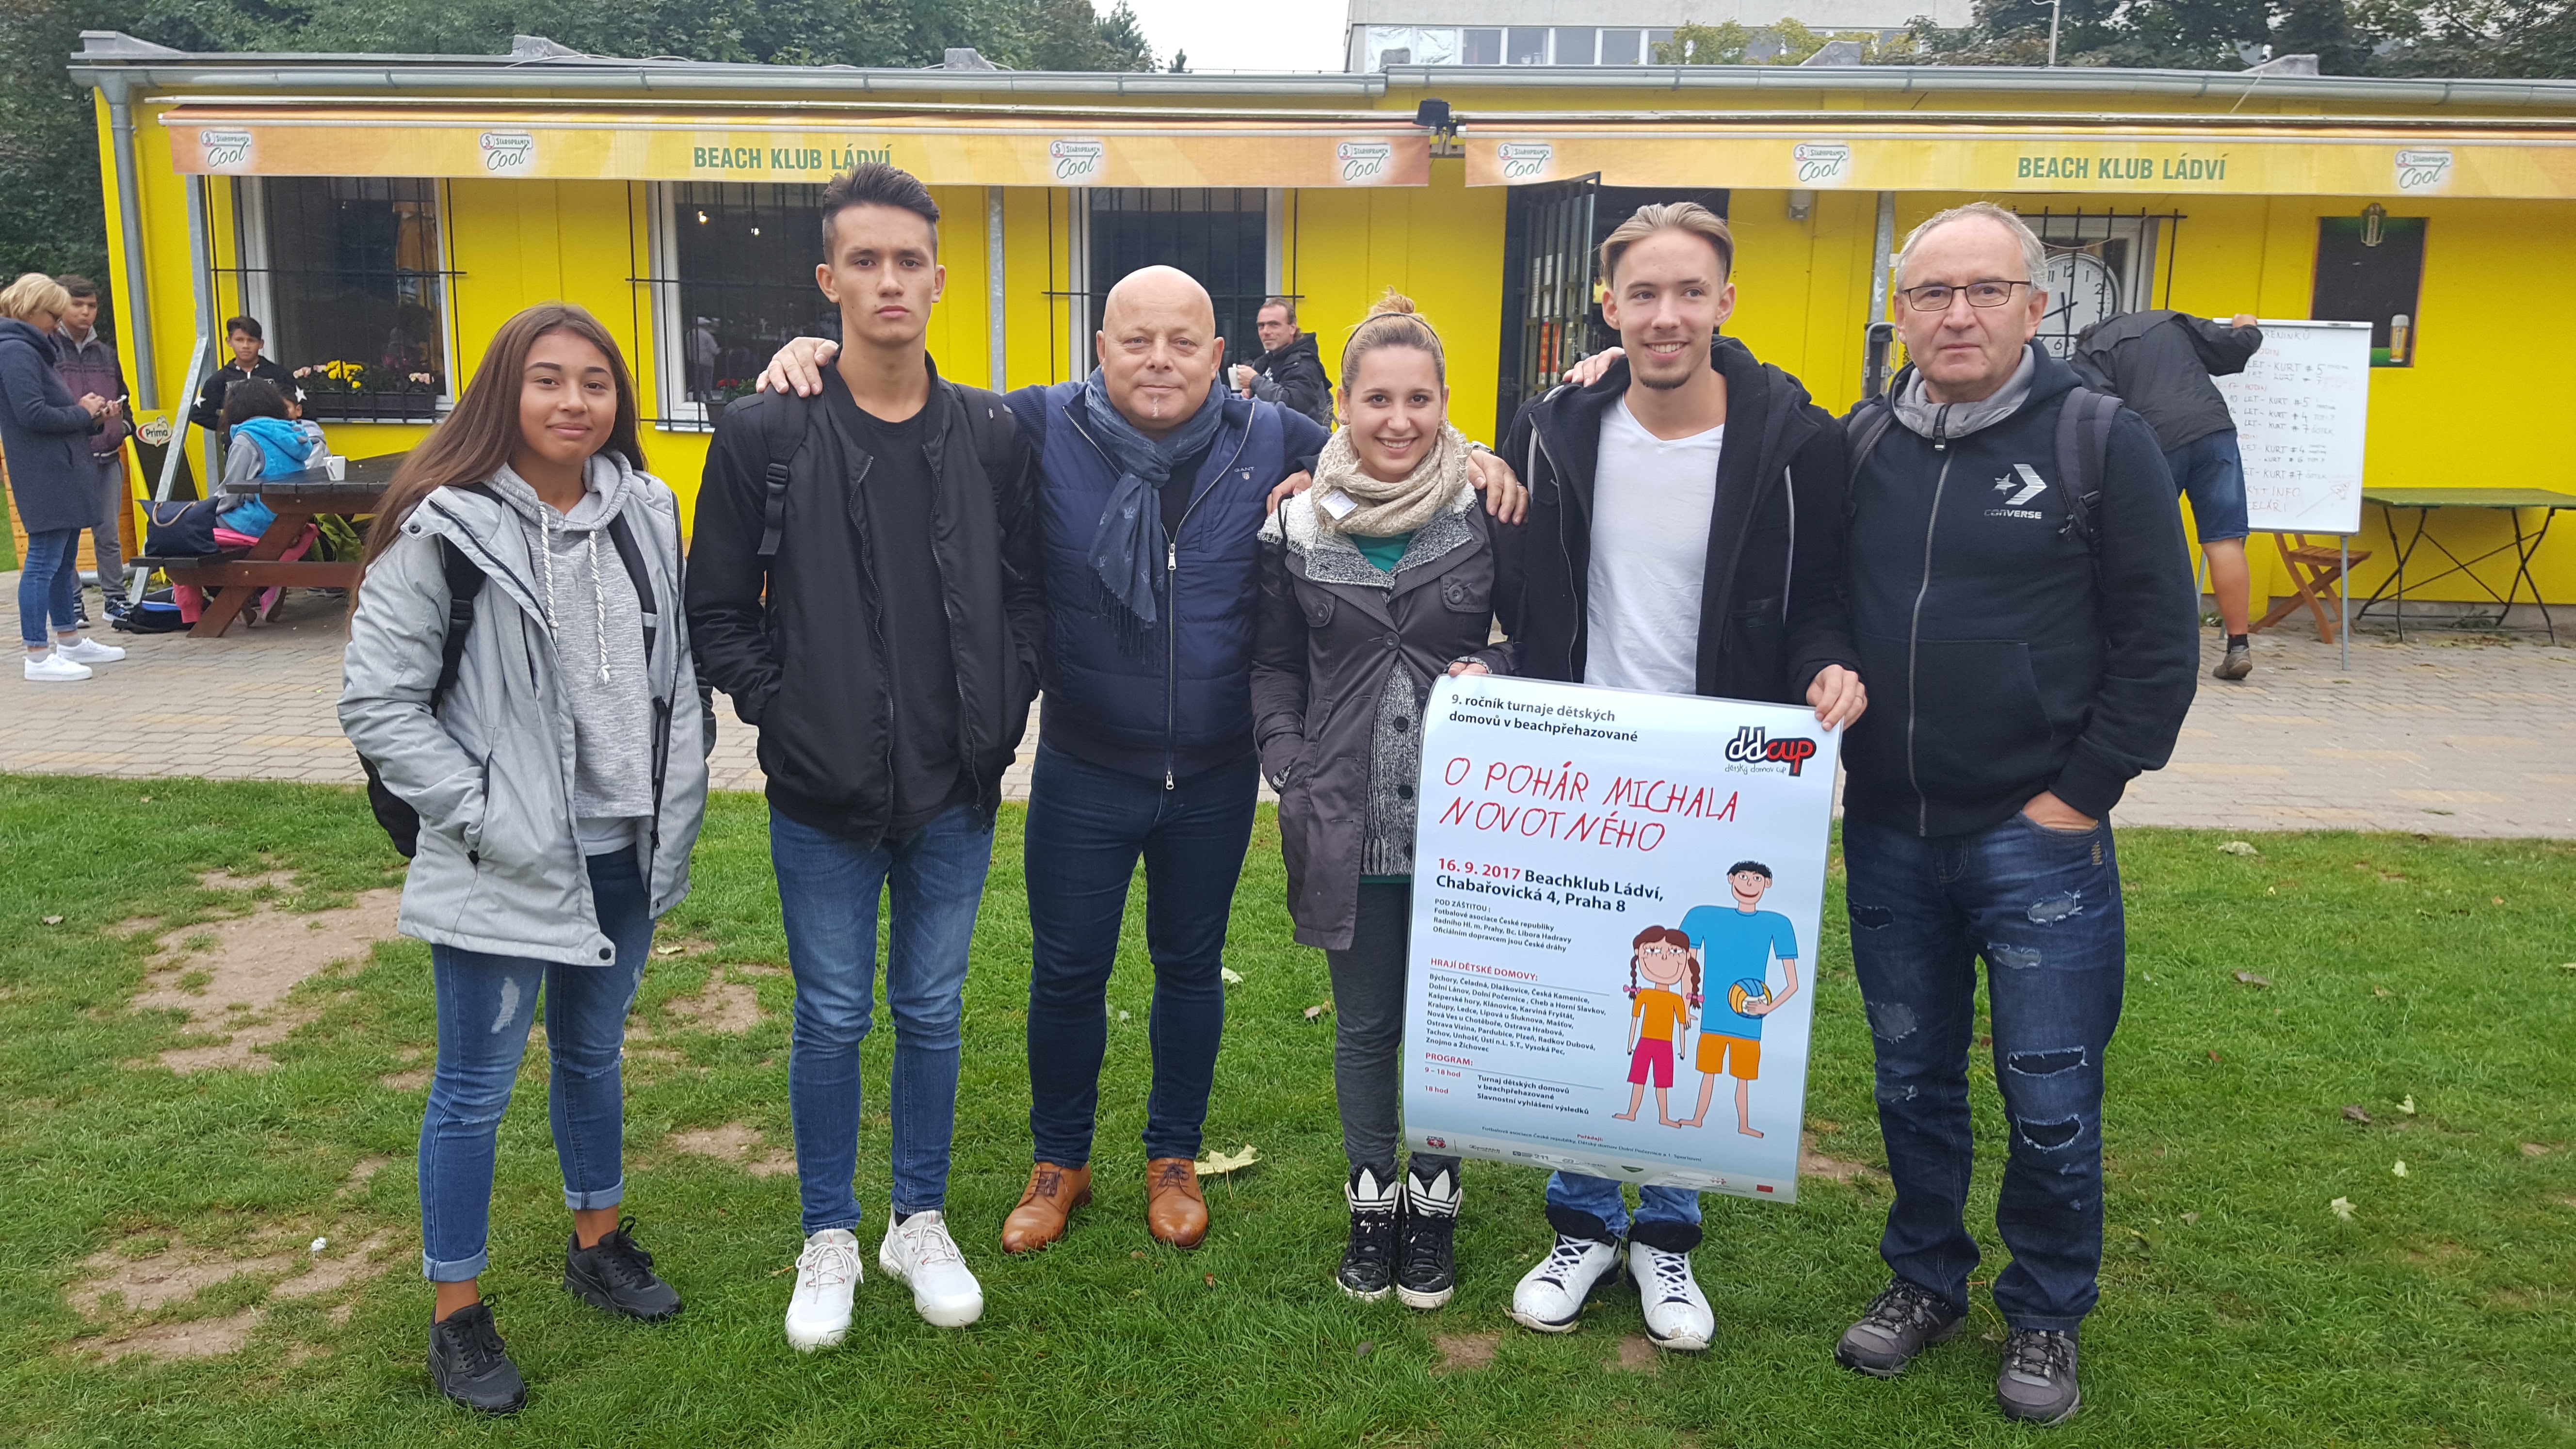 Úspěšný reprezentant i pražský radní zpestřili finišující šampionát dětských domovů